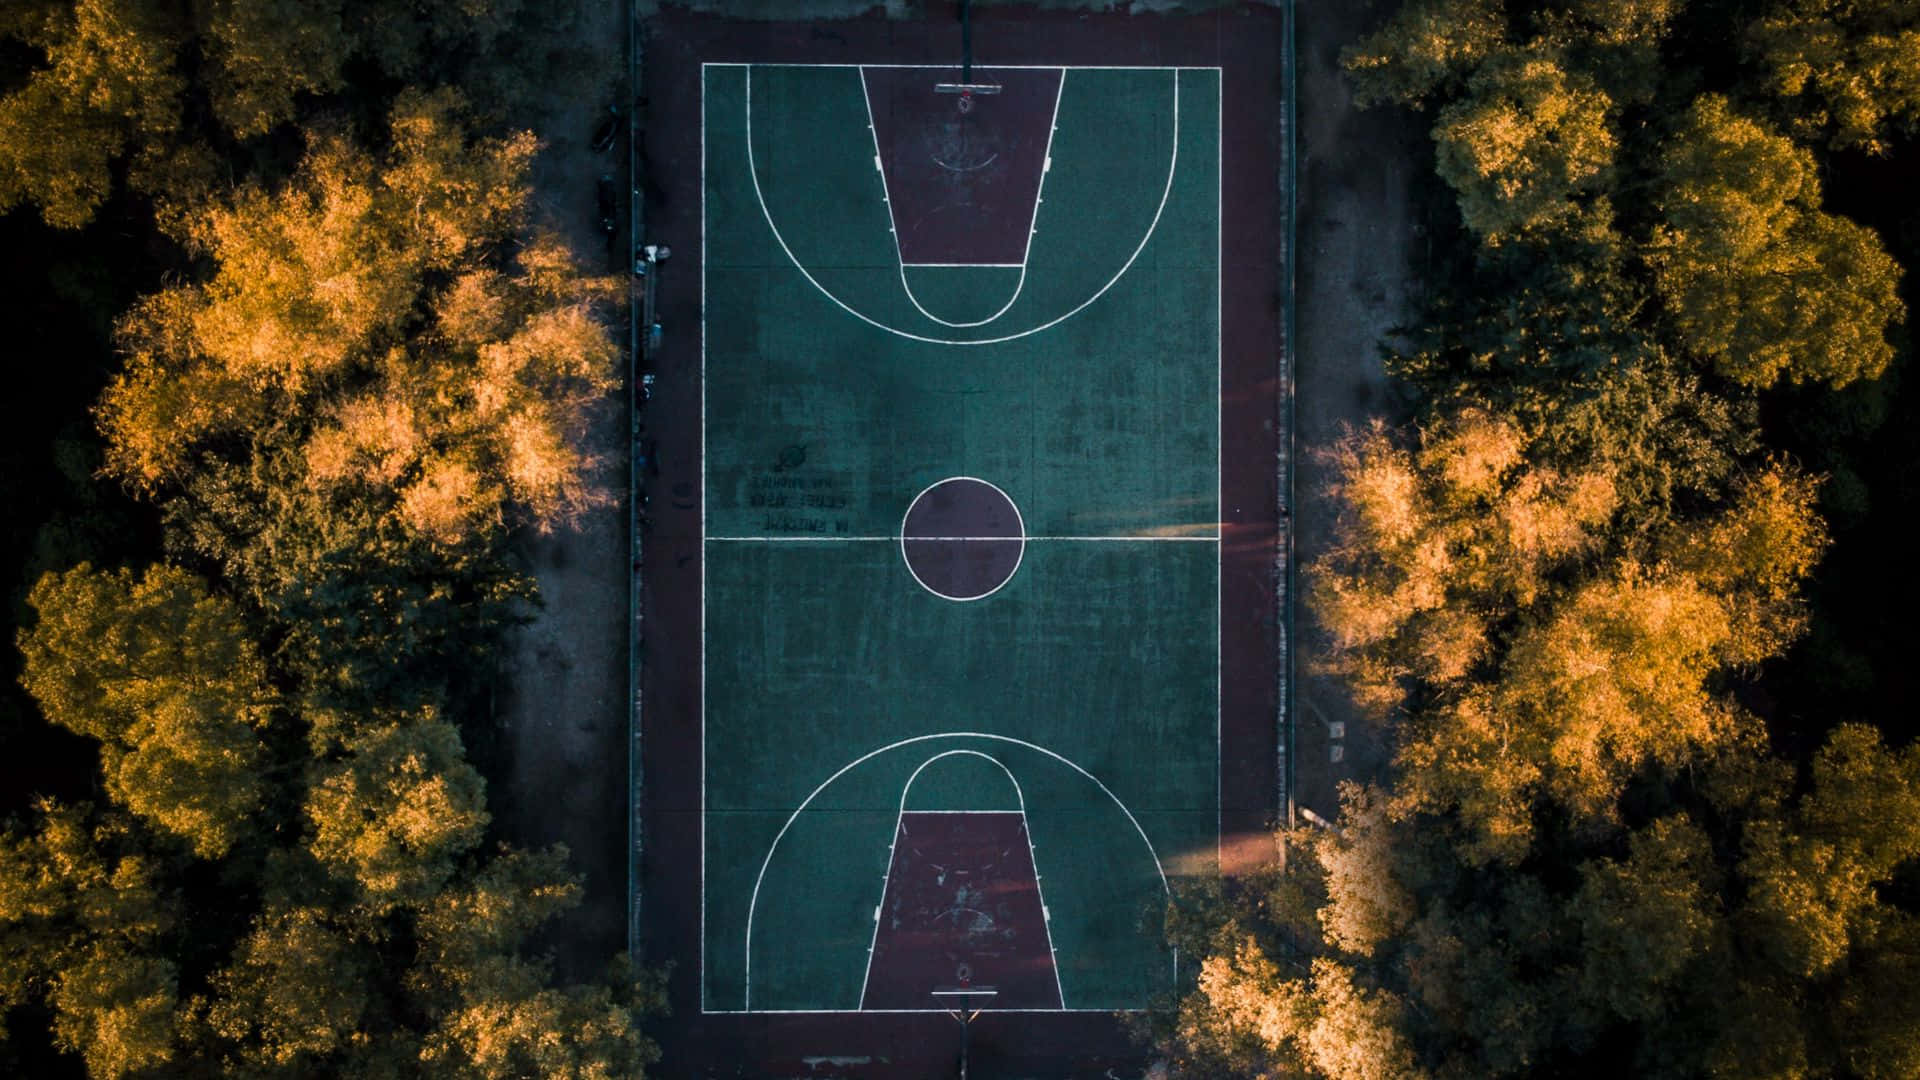 Vistaaérea De Una Cancha De Baloncesto En El Parque